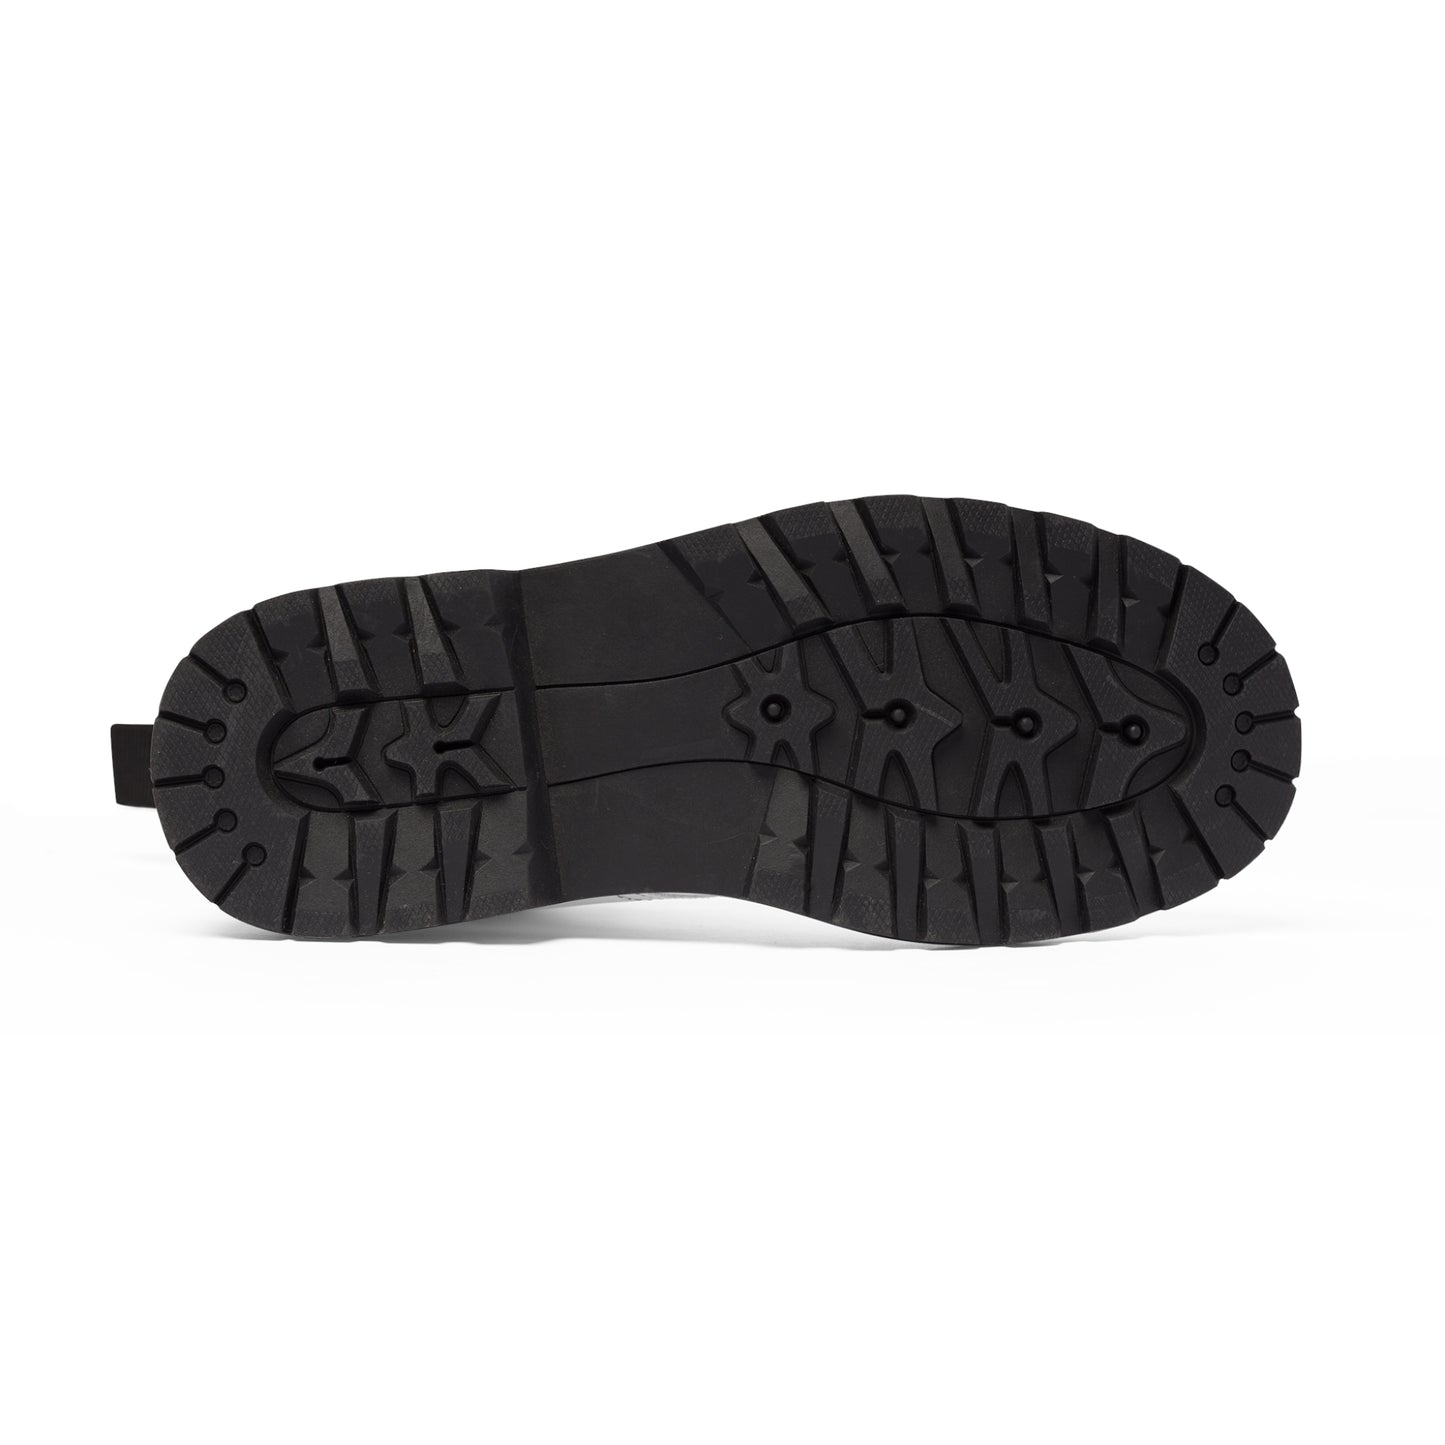 Men's Canvas Boots - 02857 US 10.5 Black sole